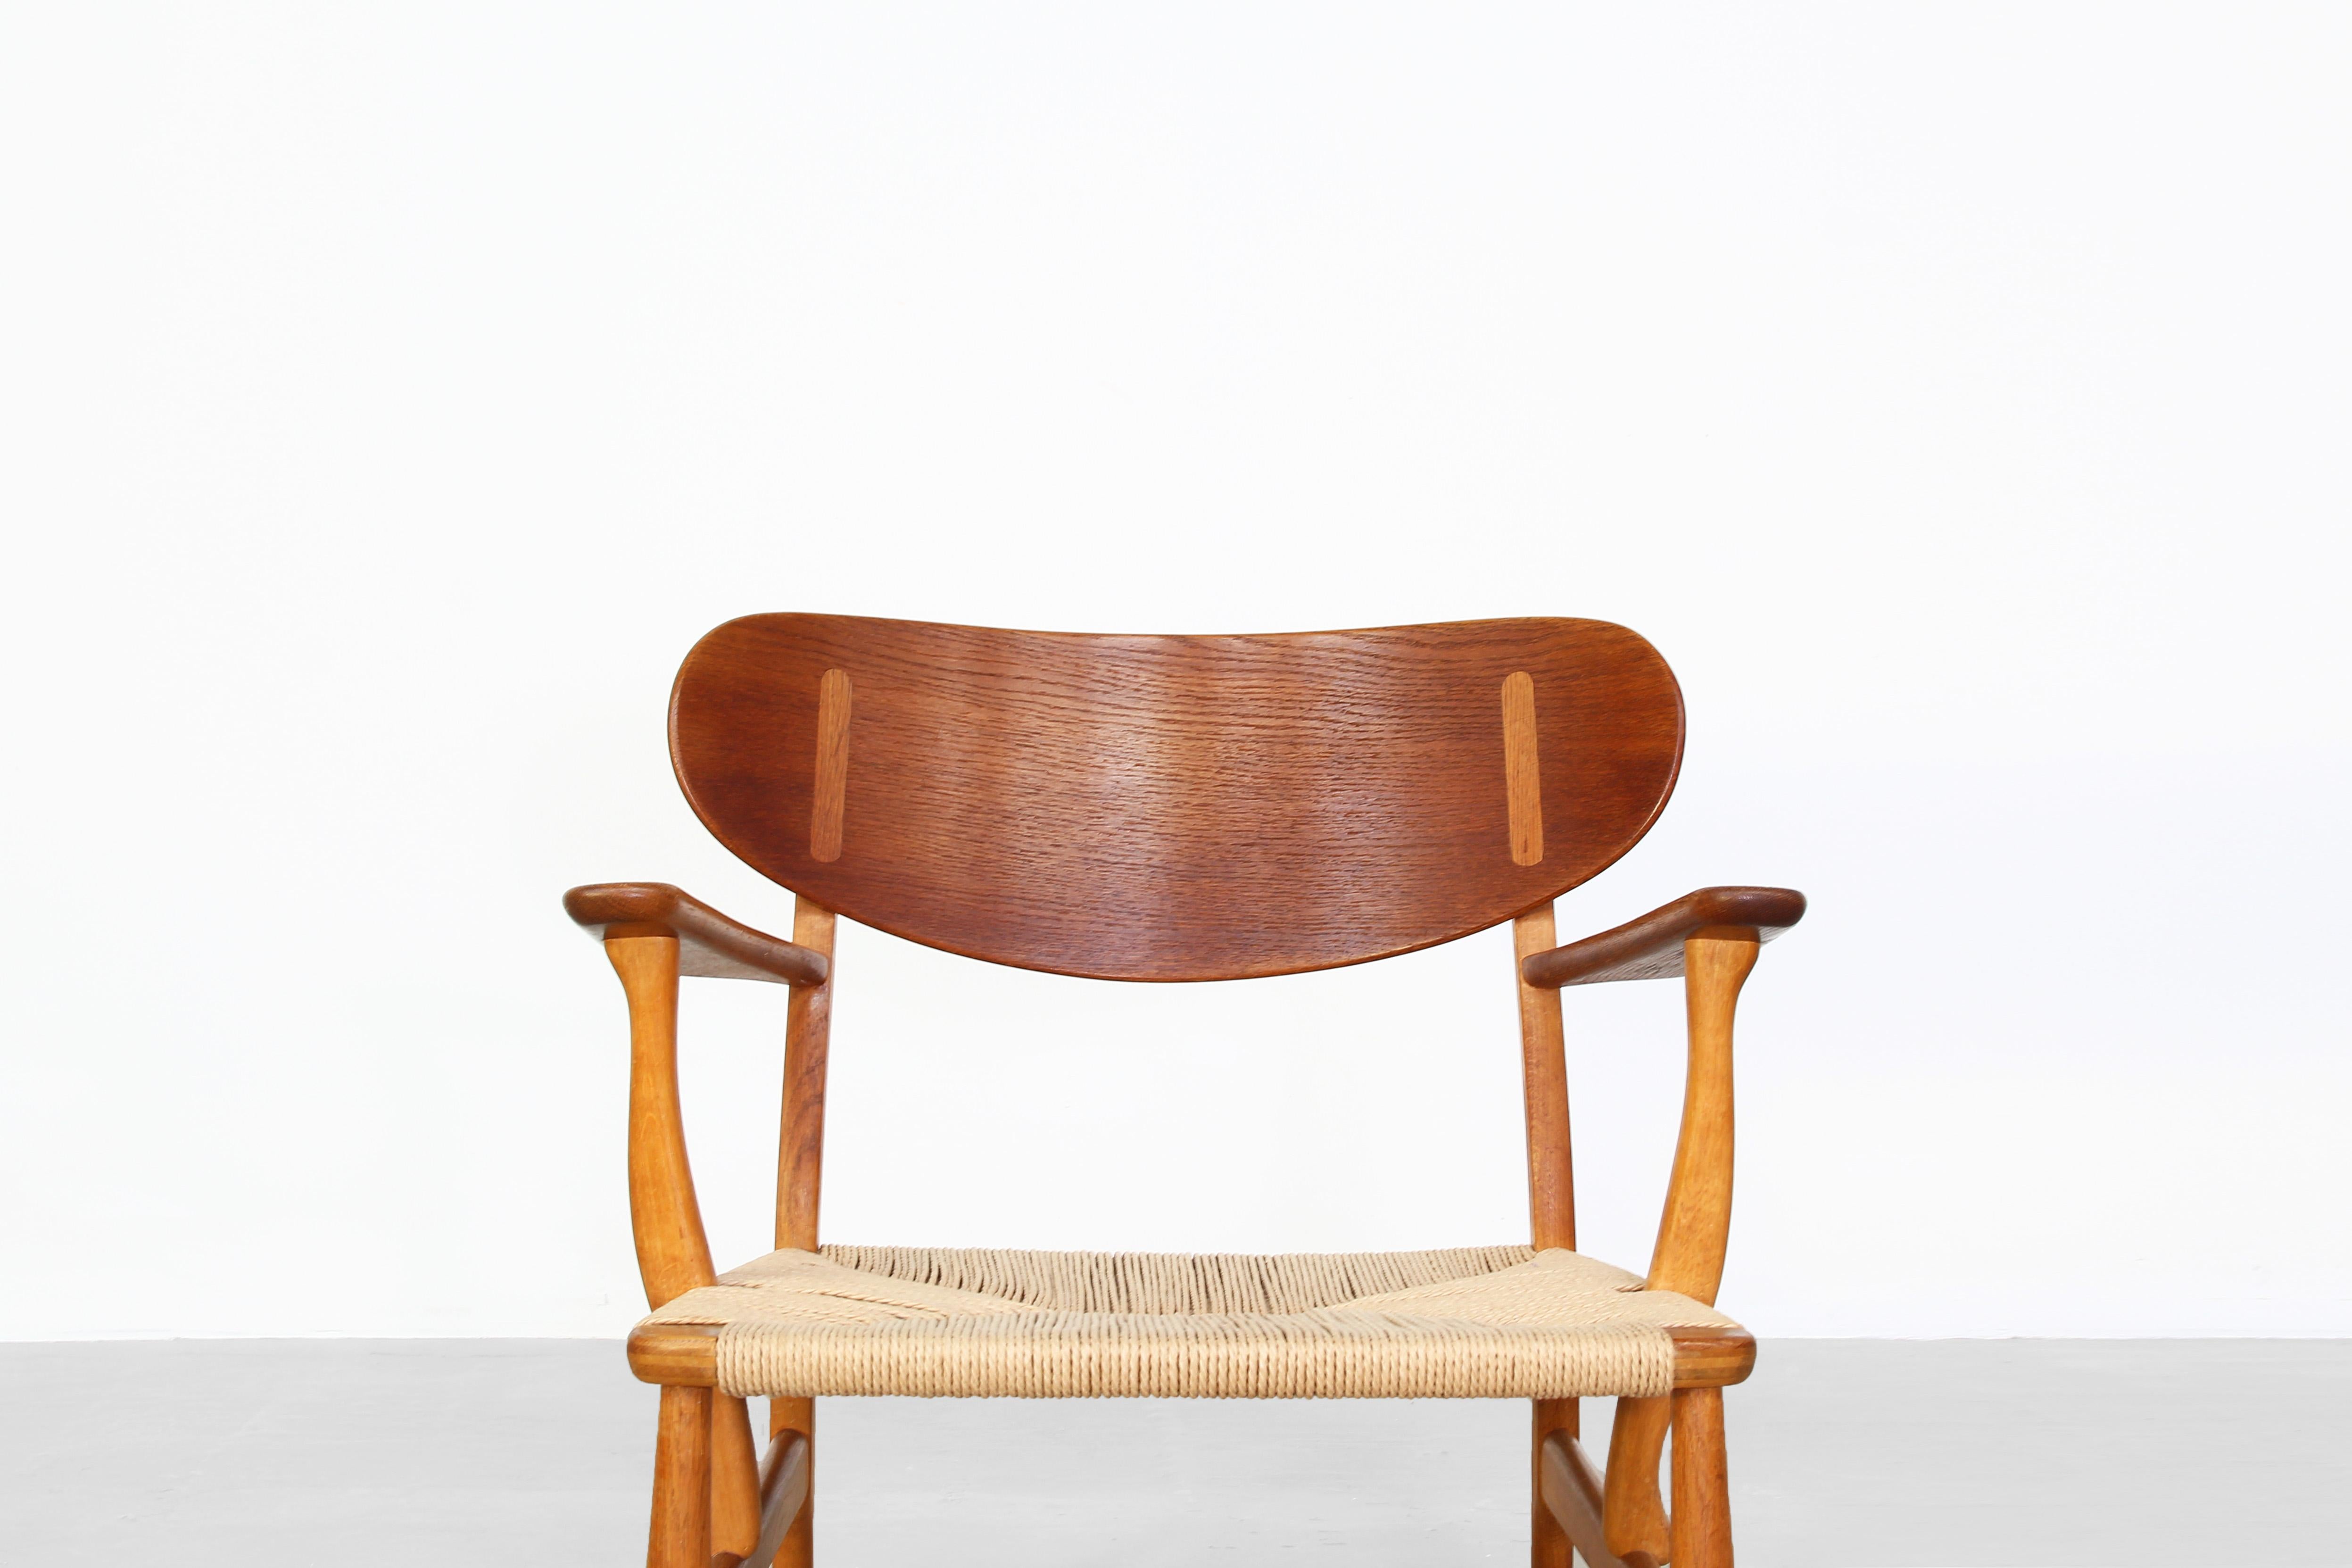 Pair of Danish Lounge Chairs by Hans J. Wegner for Carl Hansen CH 22 Oak (Dänisch)